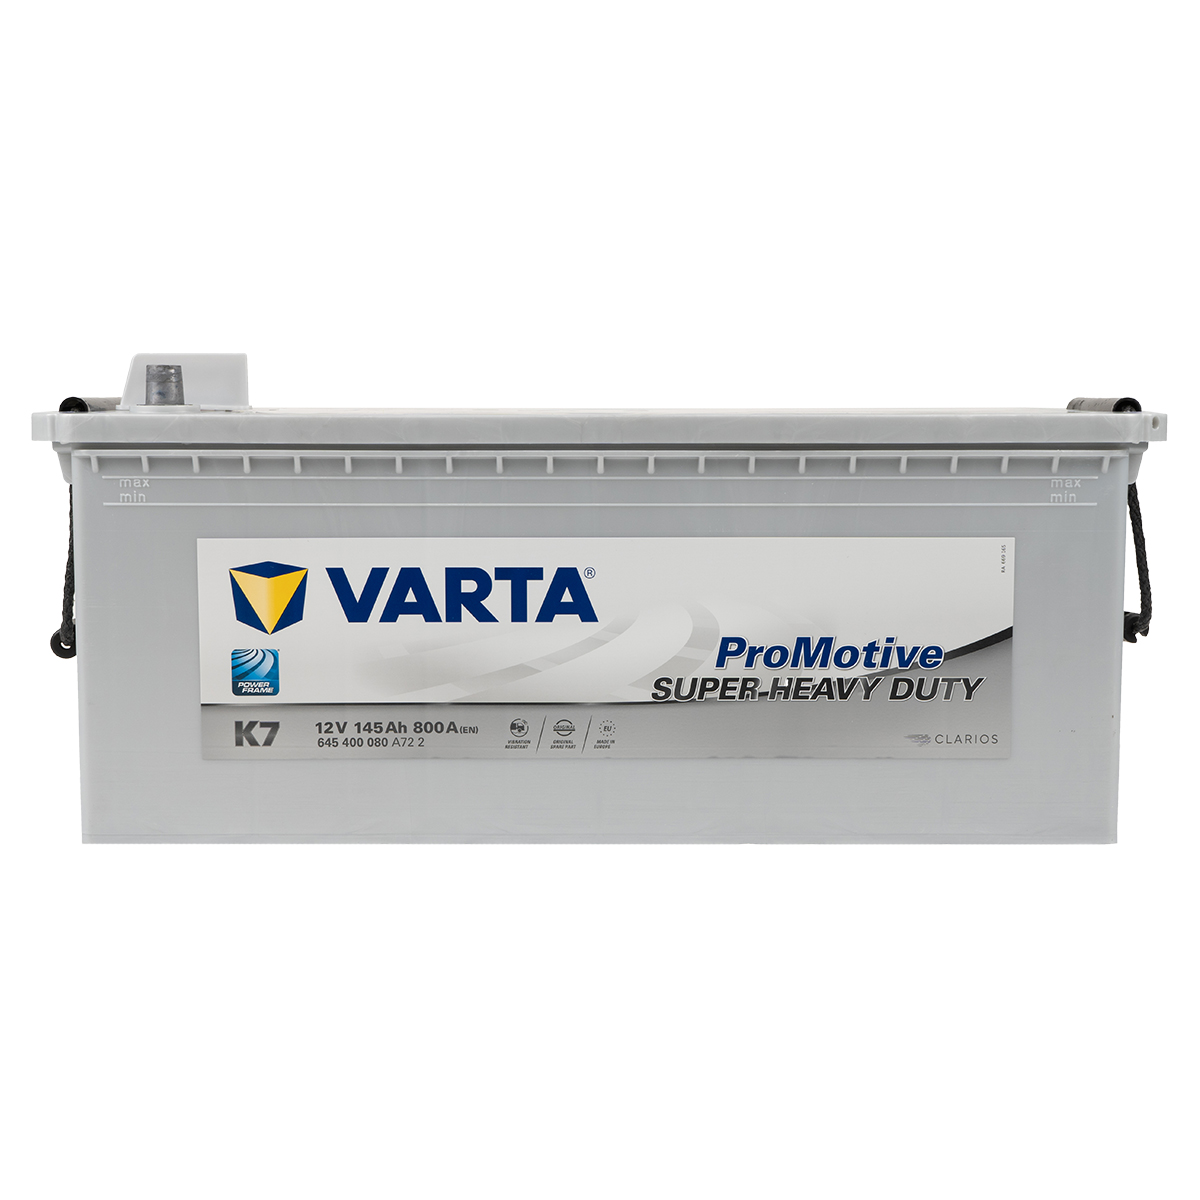 VARTA K7 ProMotive Super Heavy Duty 145Ah 800A LKW Batterie 645 400 080